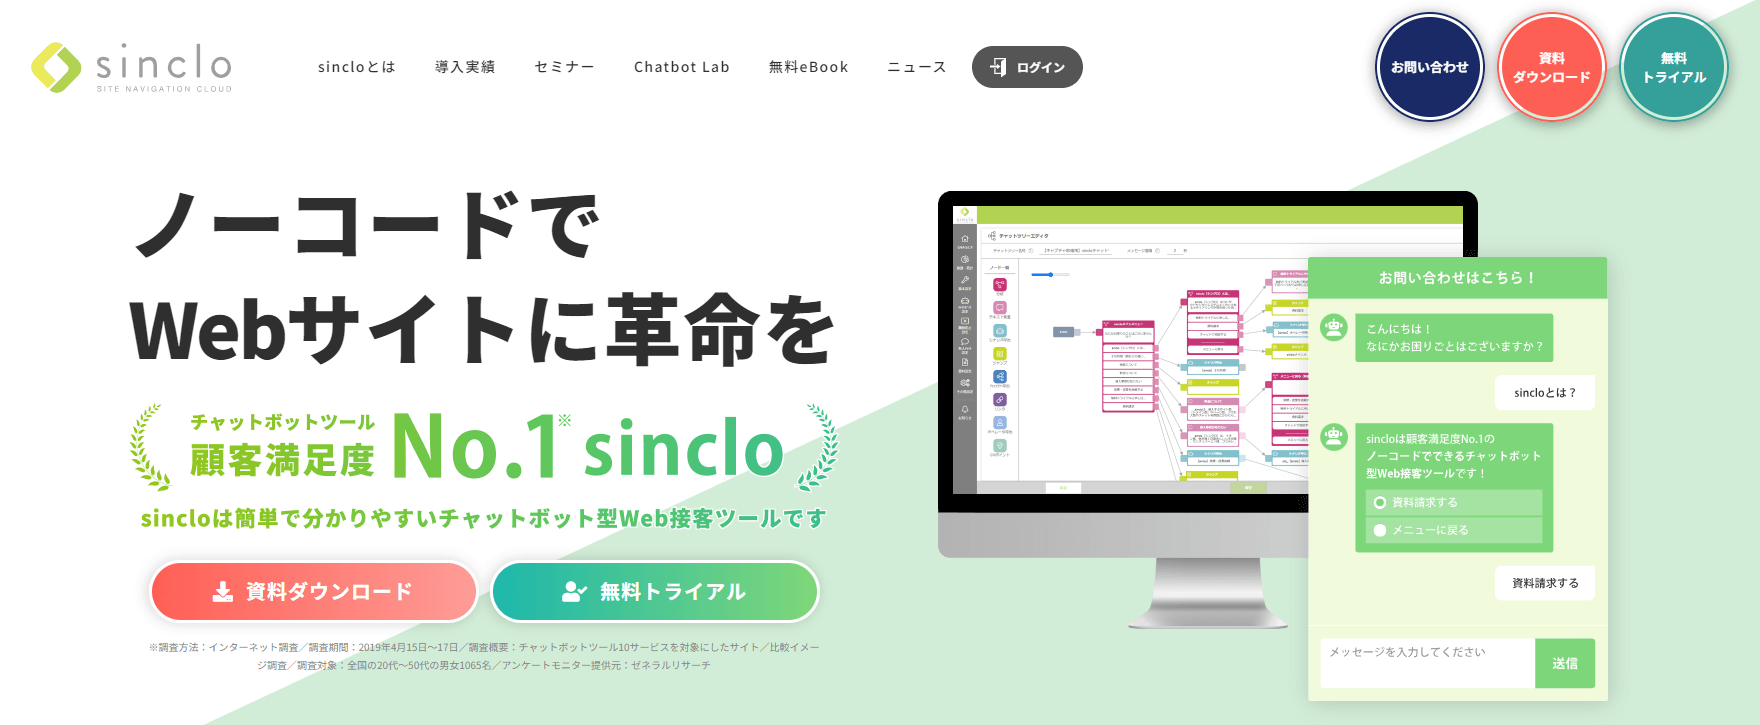 sincloのwebサイト